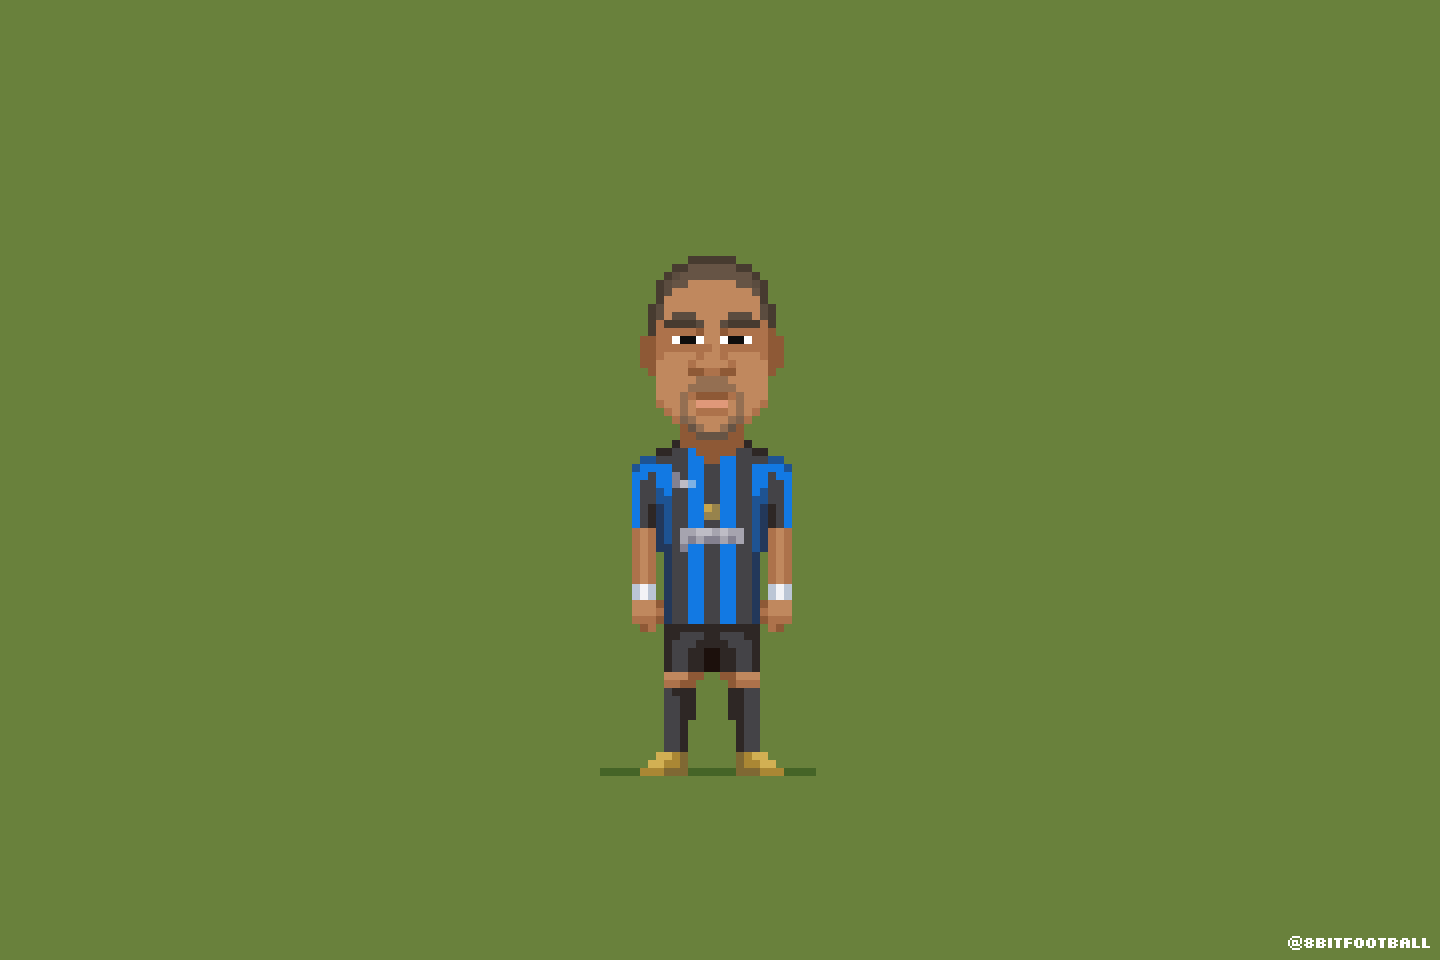 Adriano (Internazionale times)